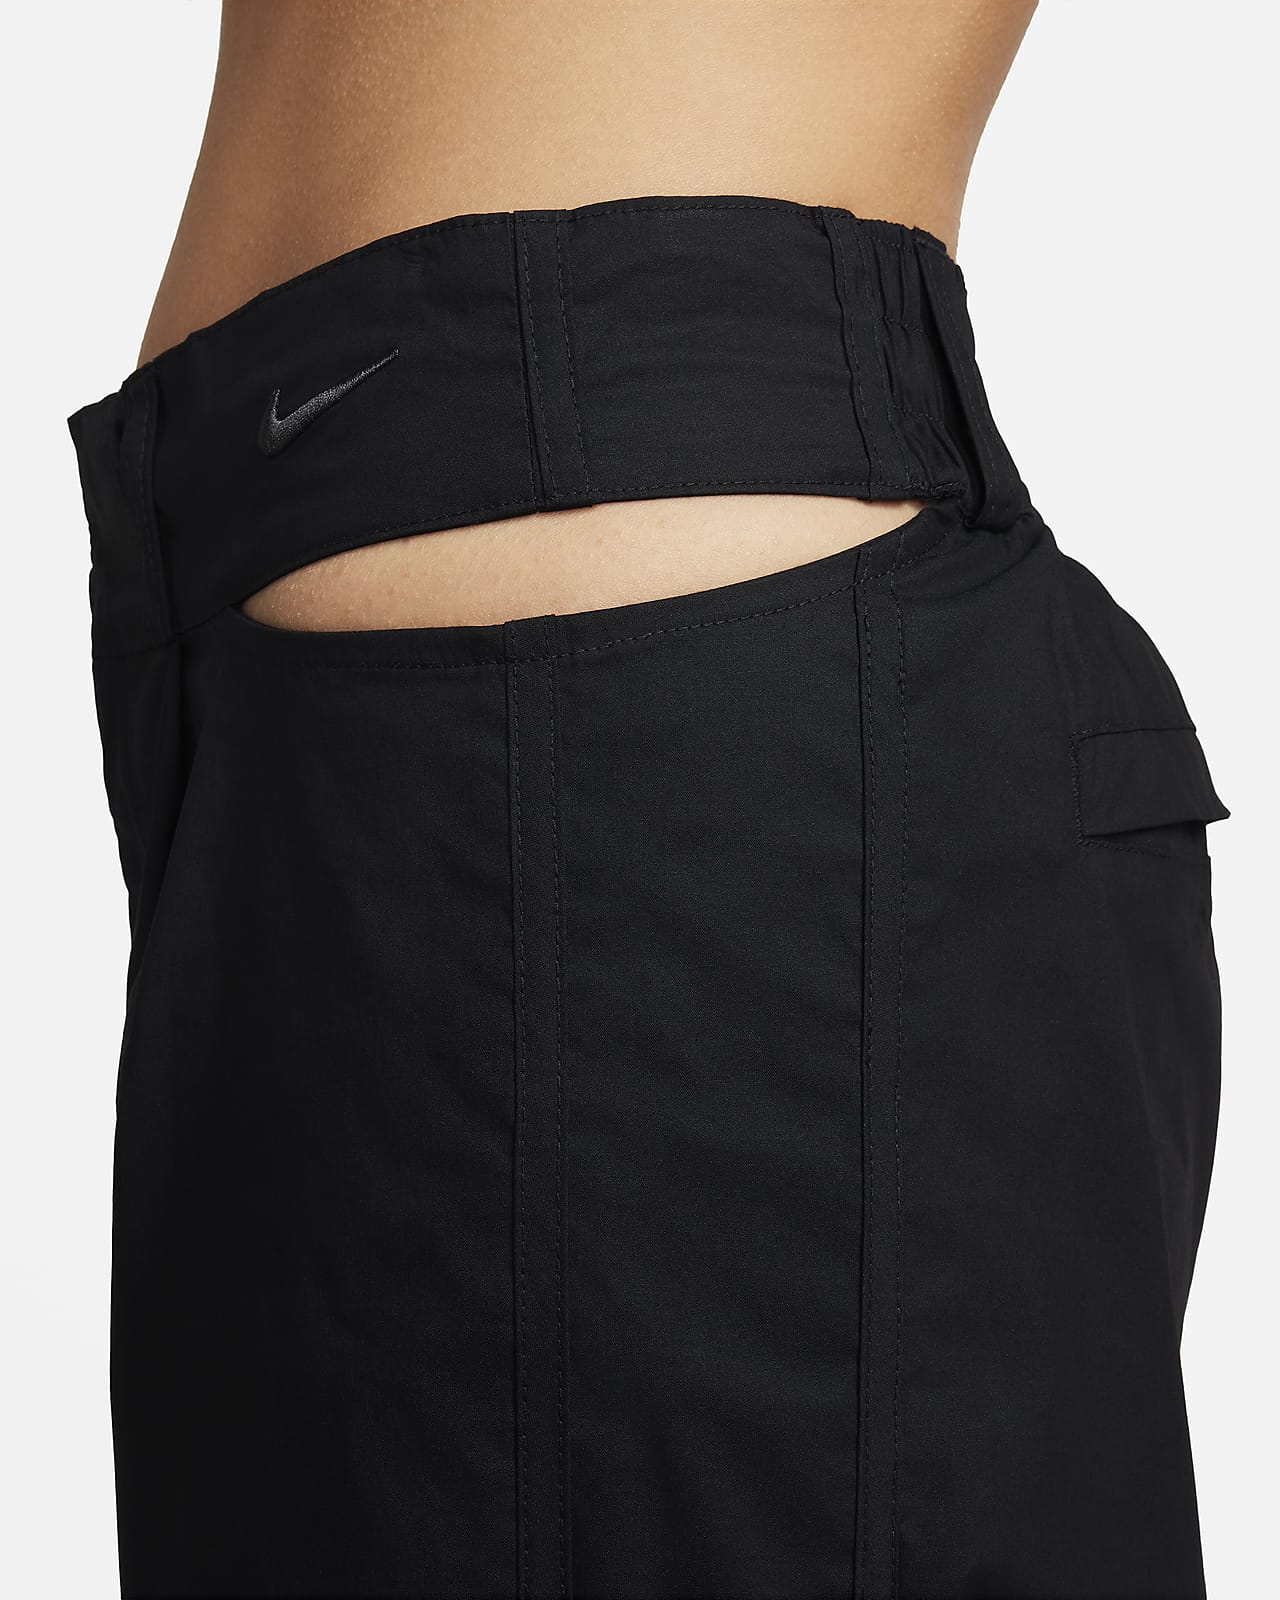 Nike Sportswear Women's Trouser Pants.